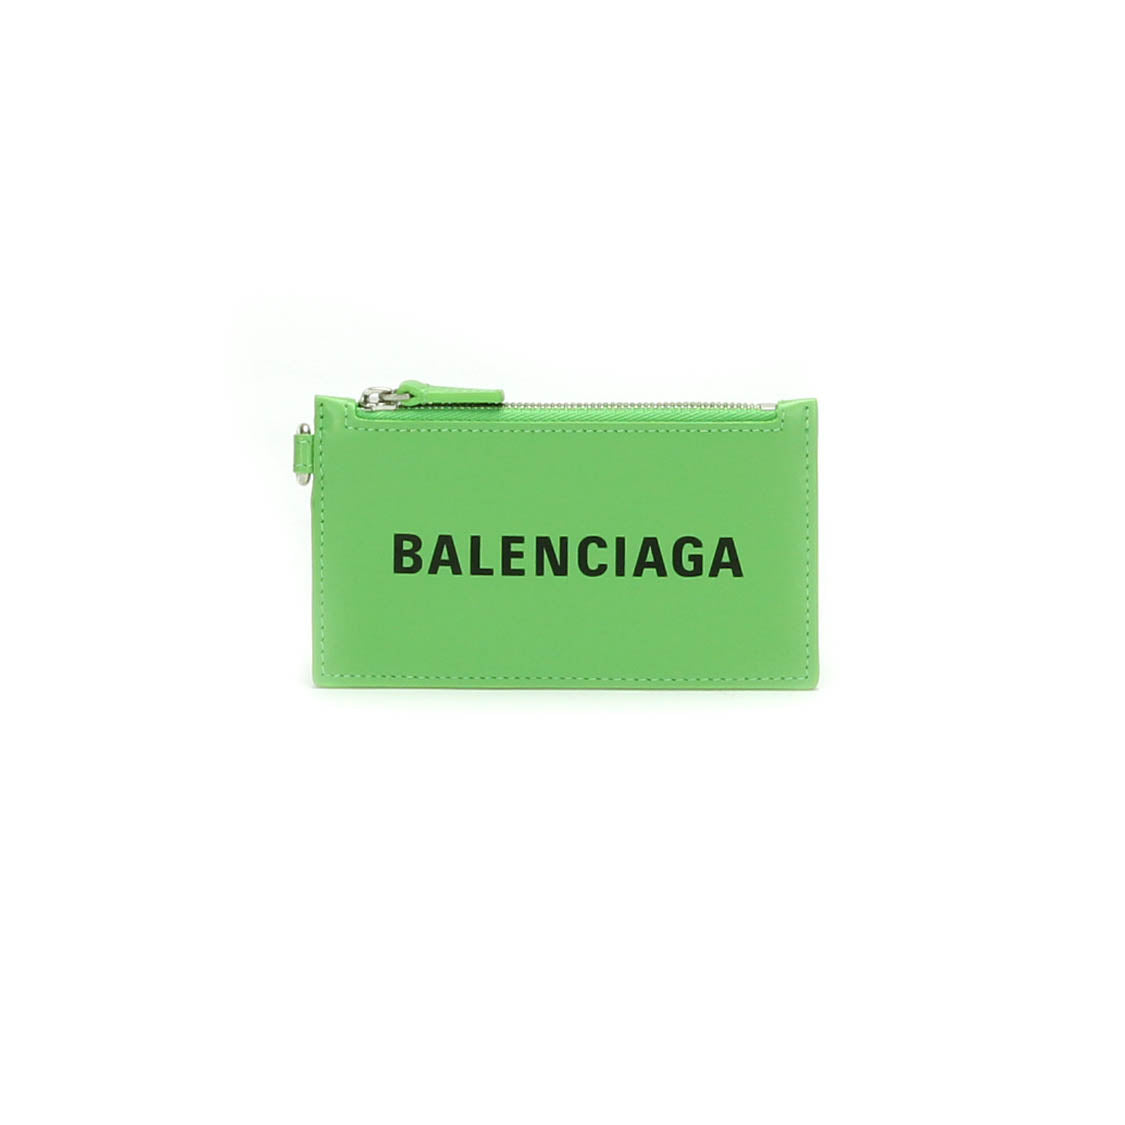 BALENCIAGA卡盒肩部594548